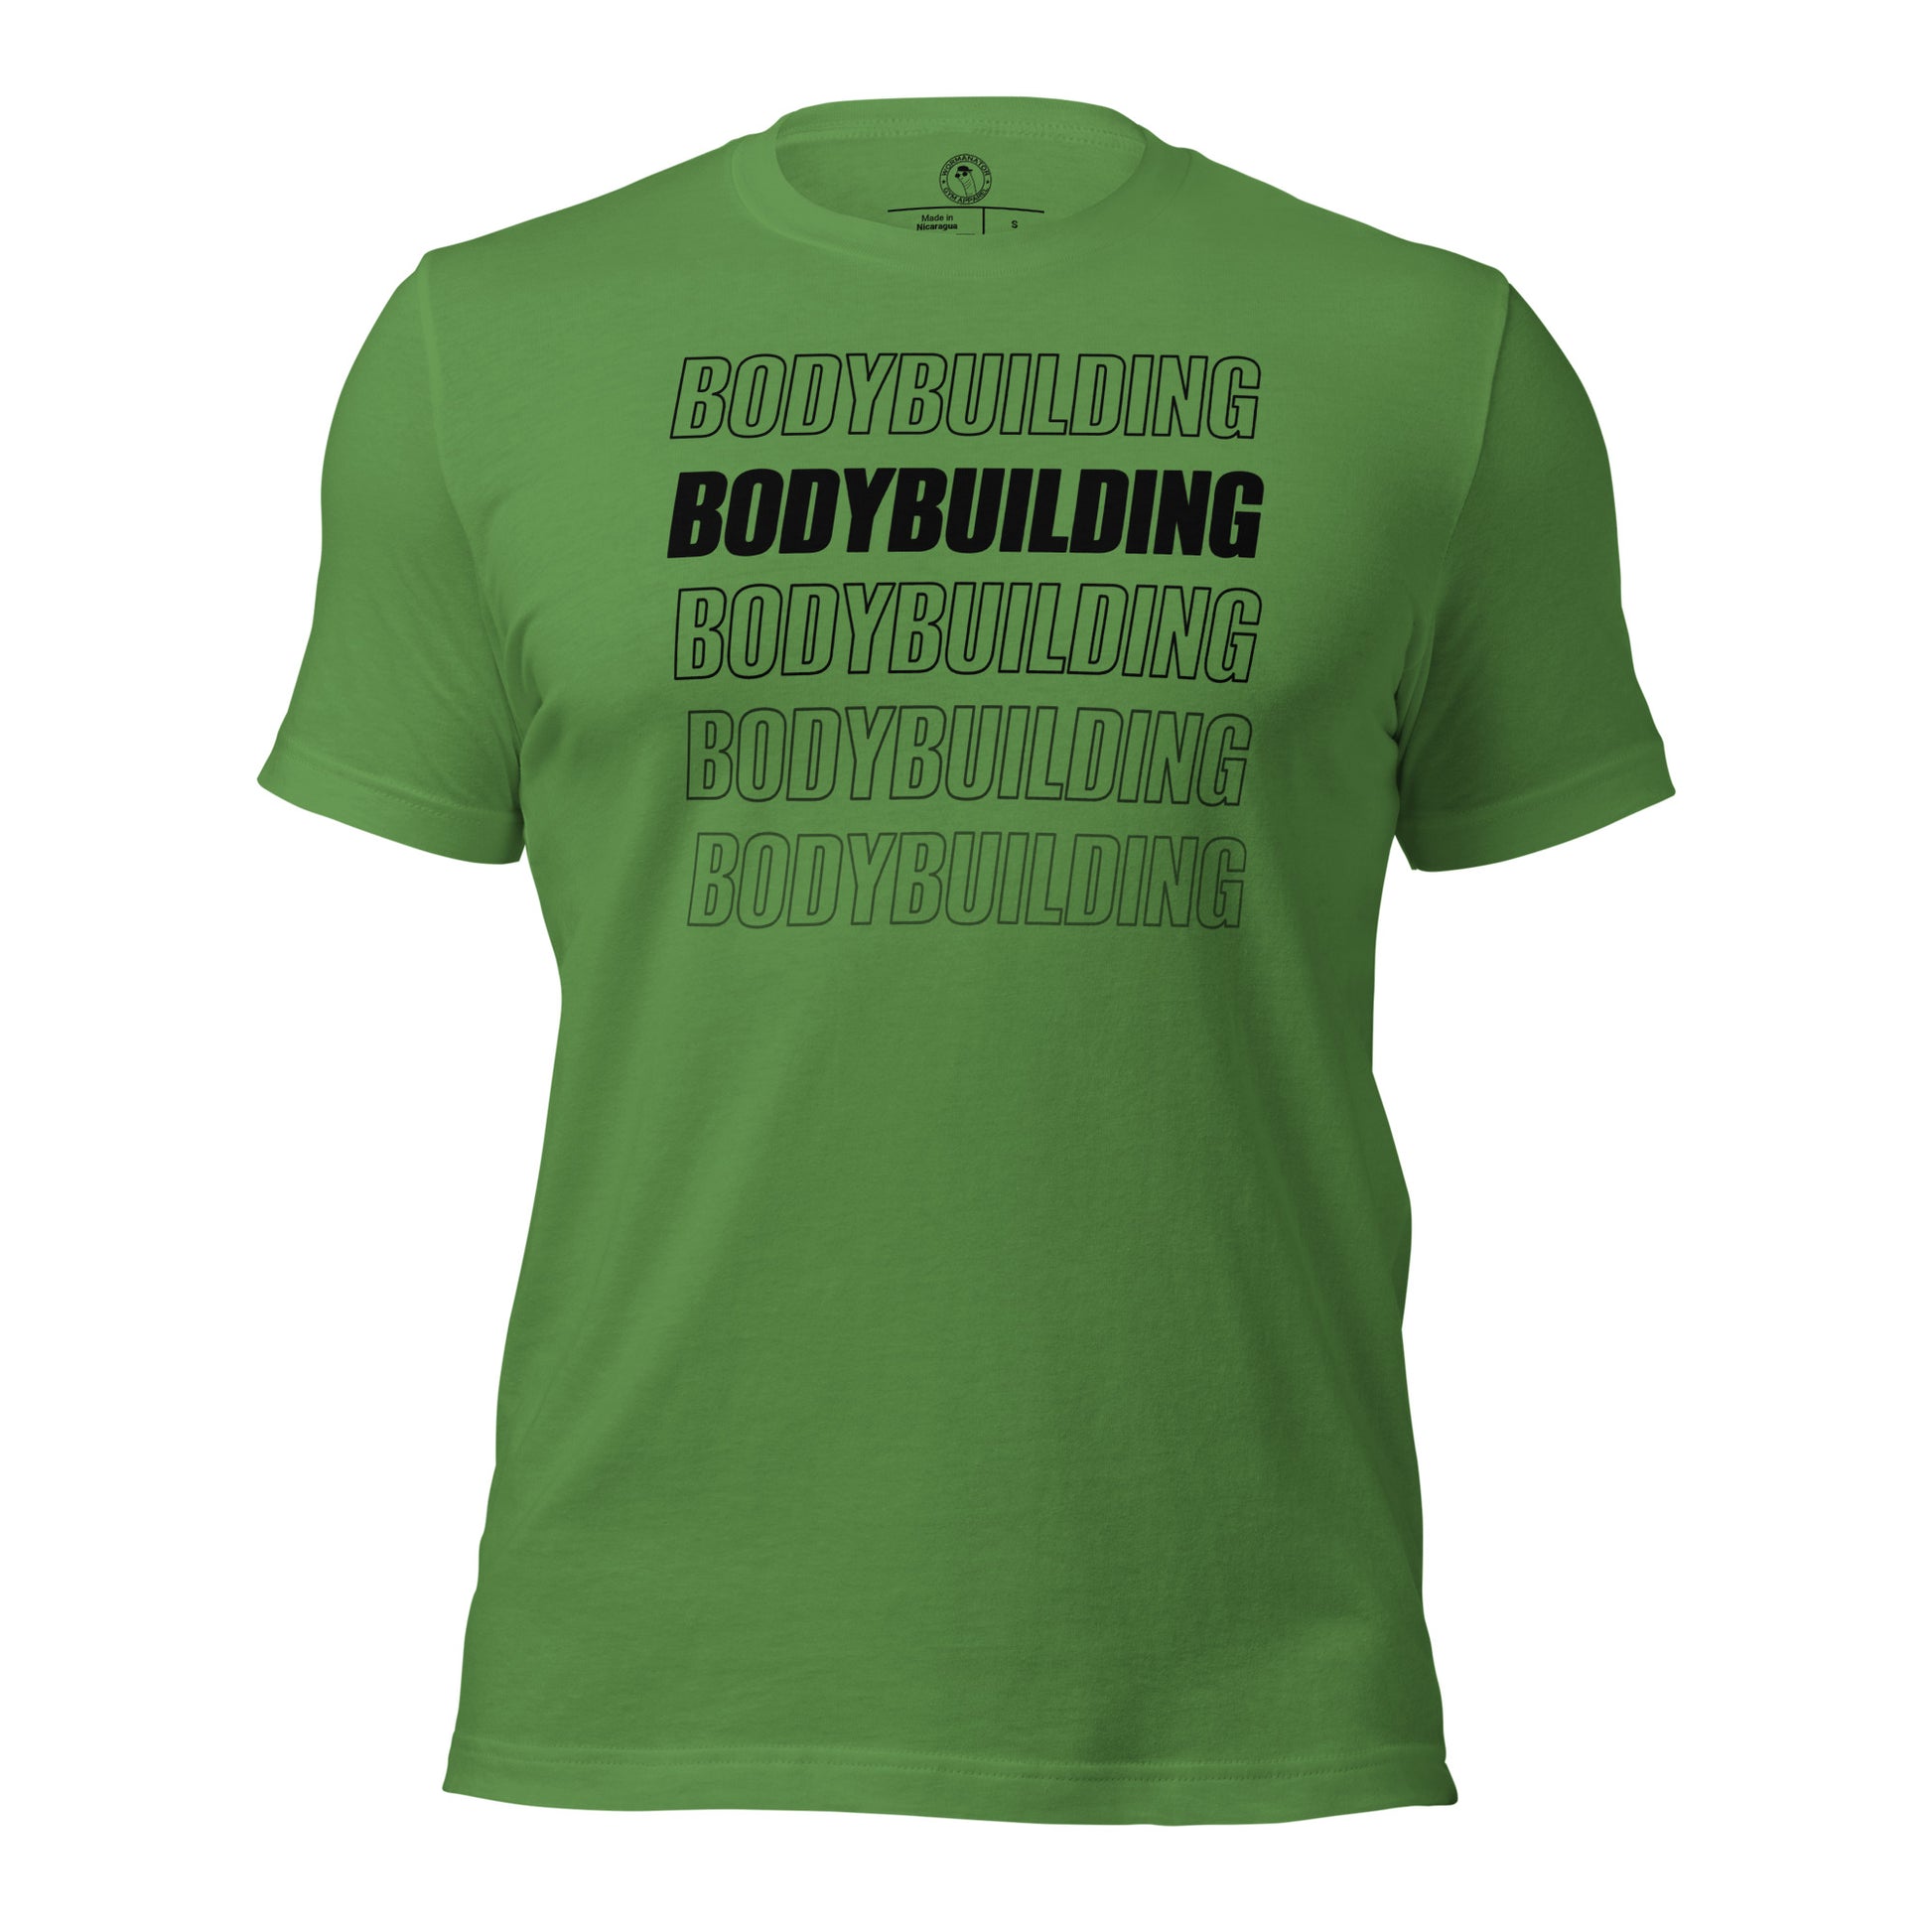 Bodybuilding Shirt in Leaf Green